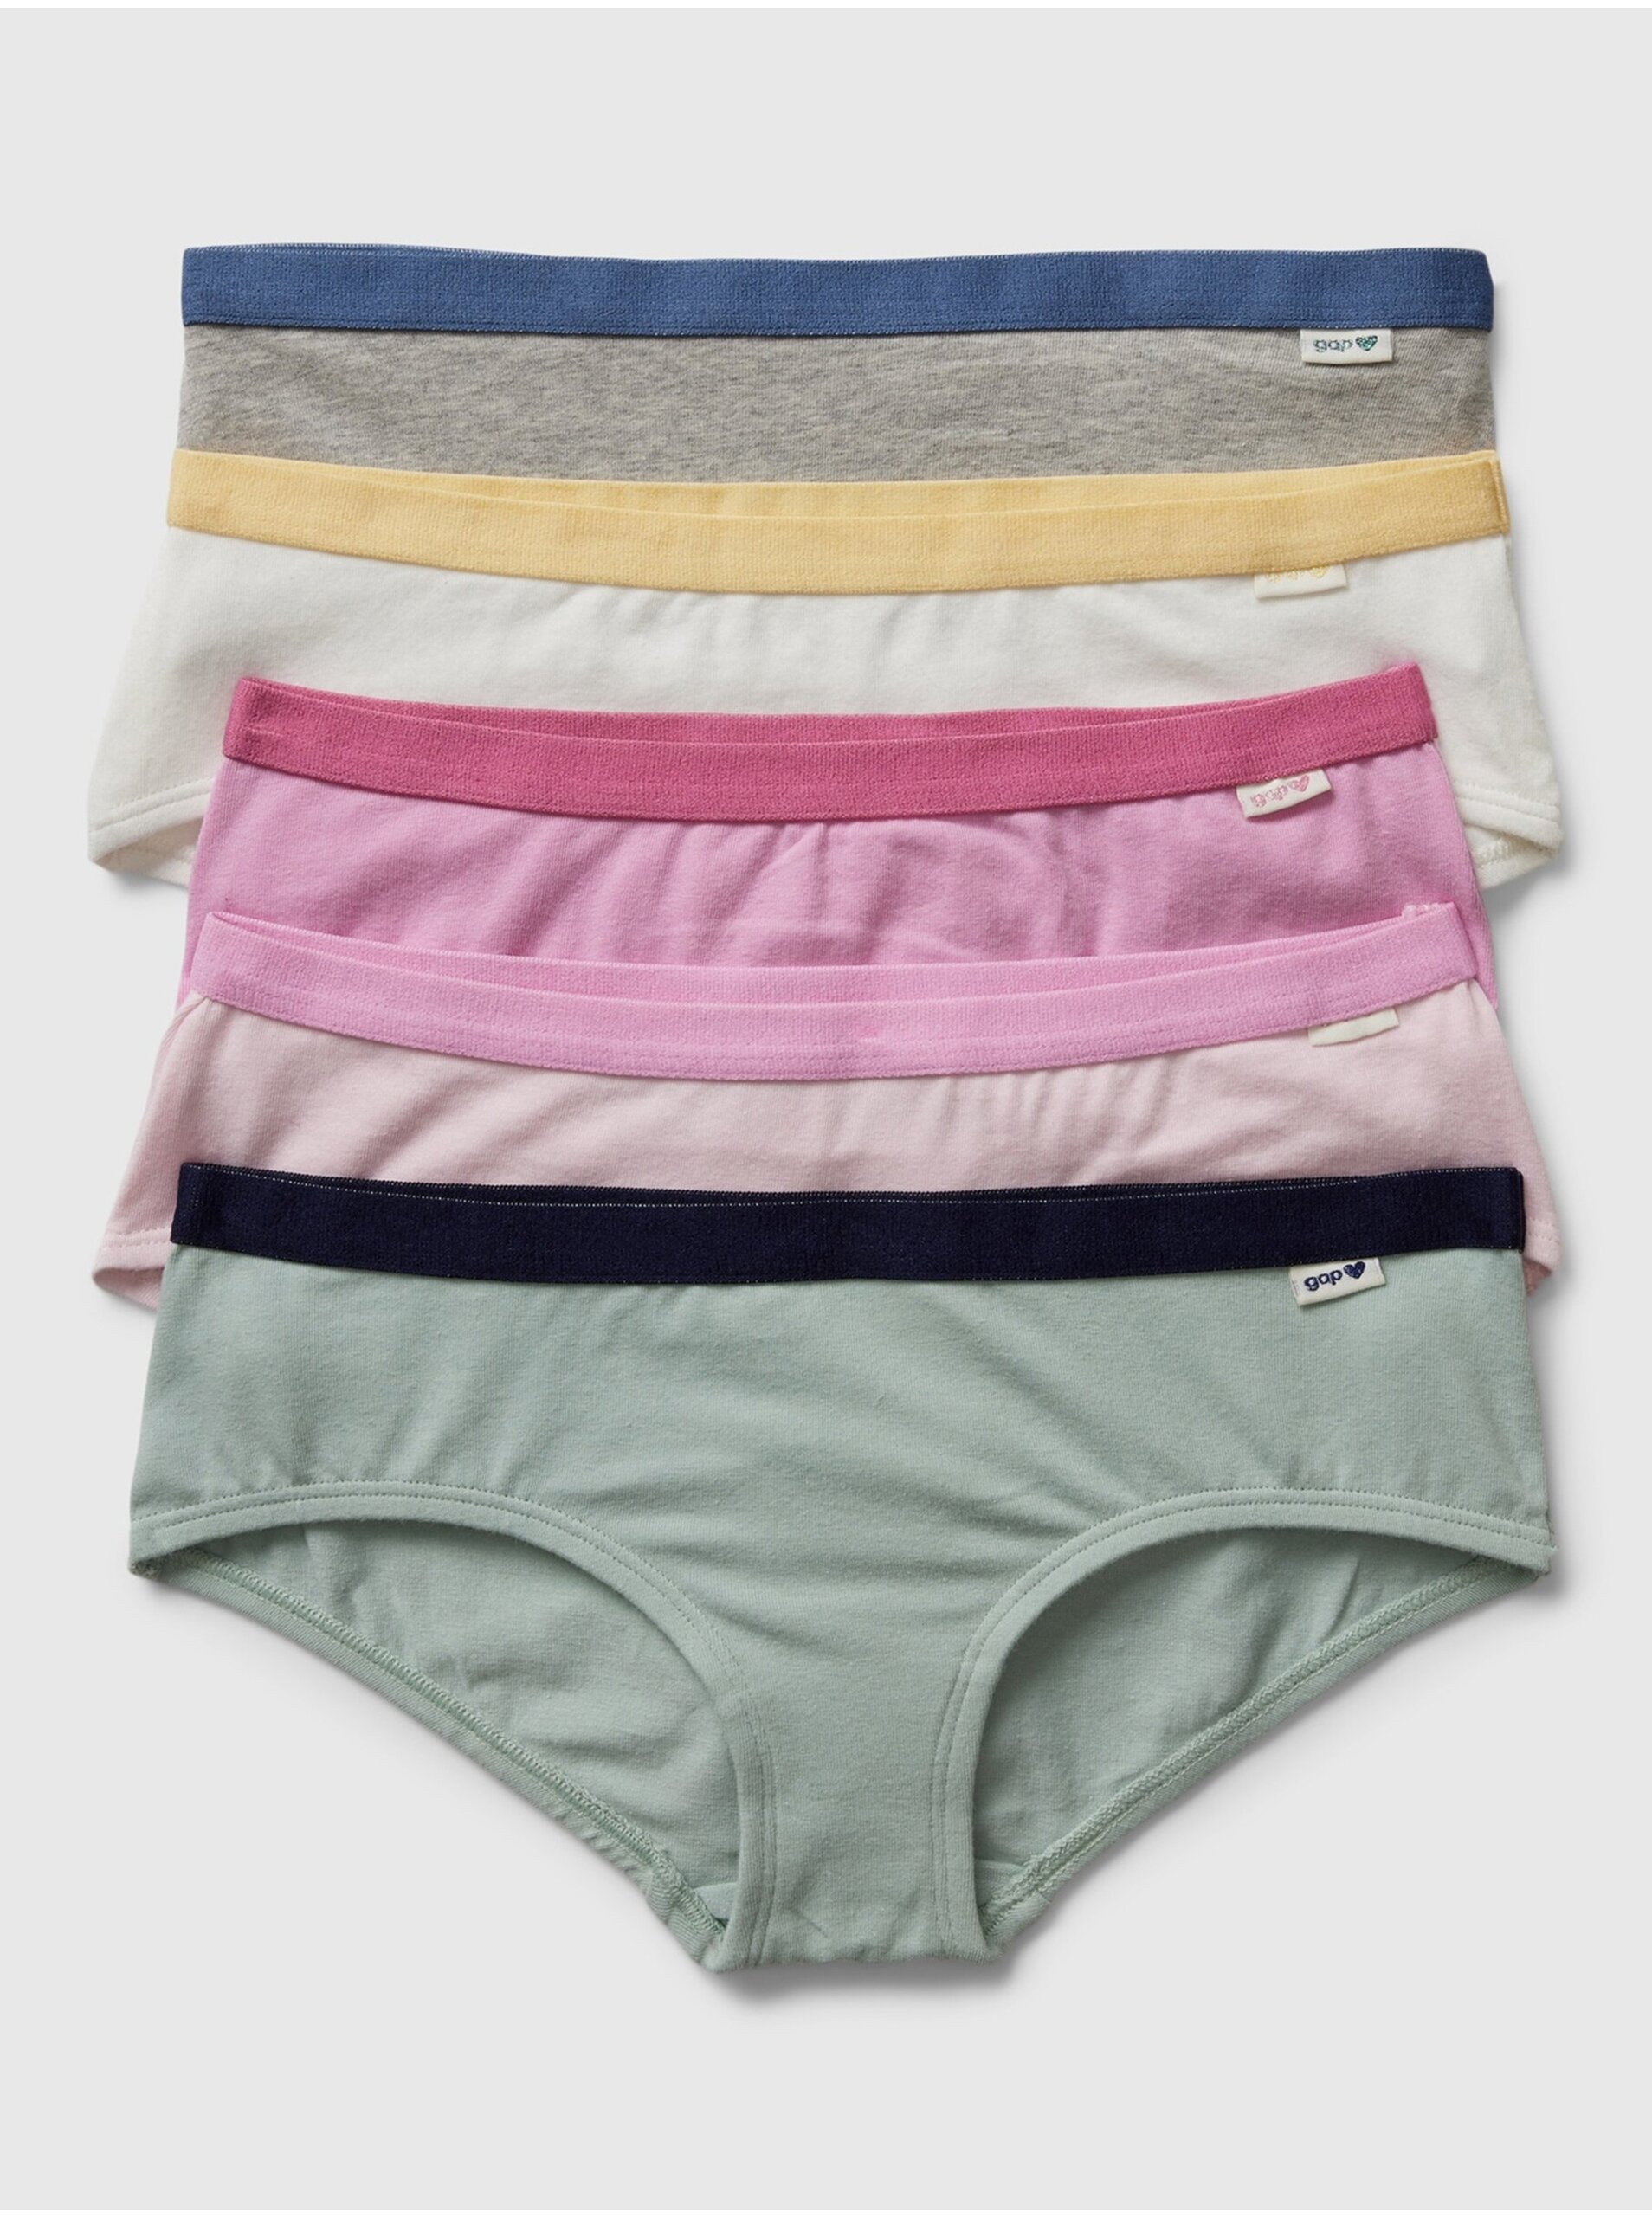 Lacno Súprava piatich dievčenských nohavičiek v ružovej, bielej a šedej farbe GAP